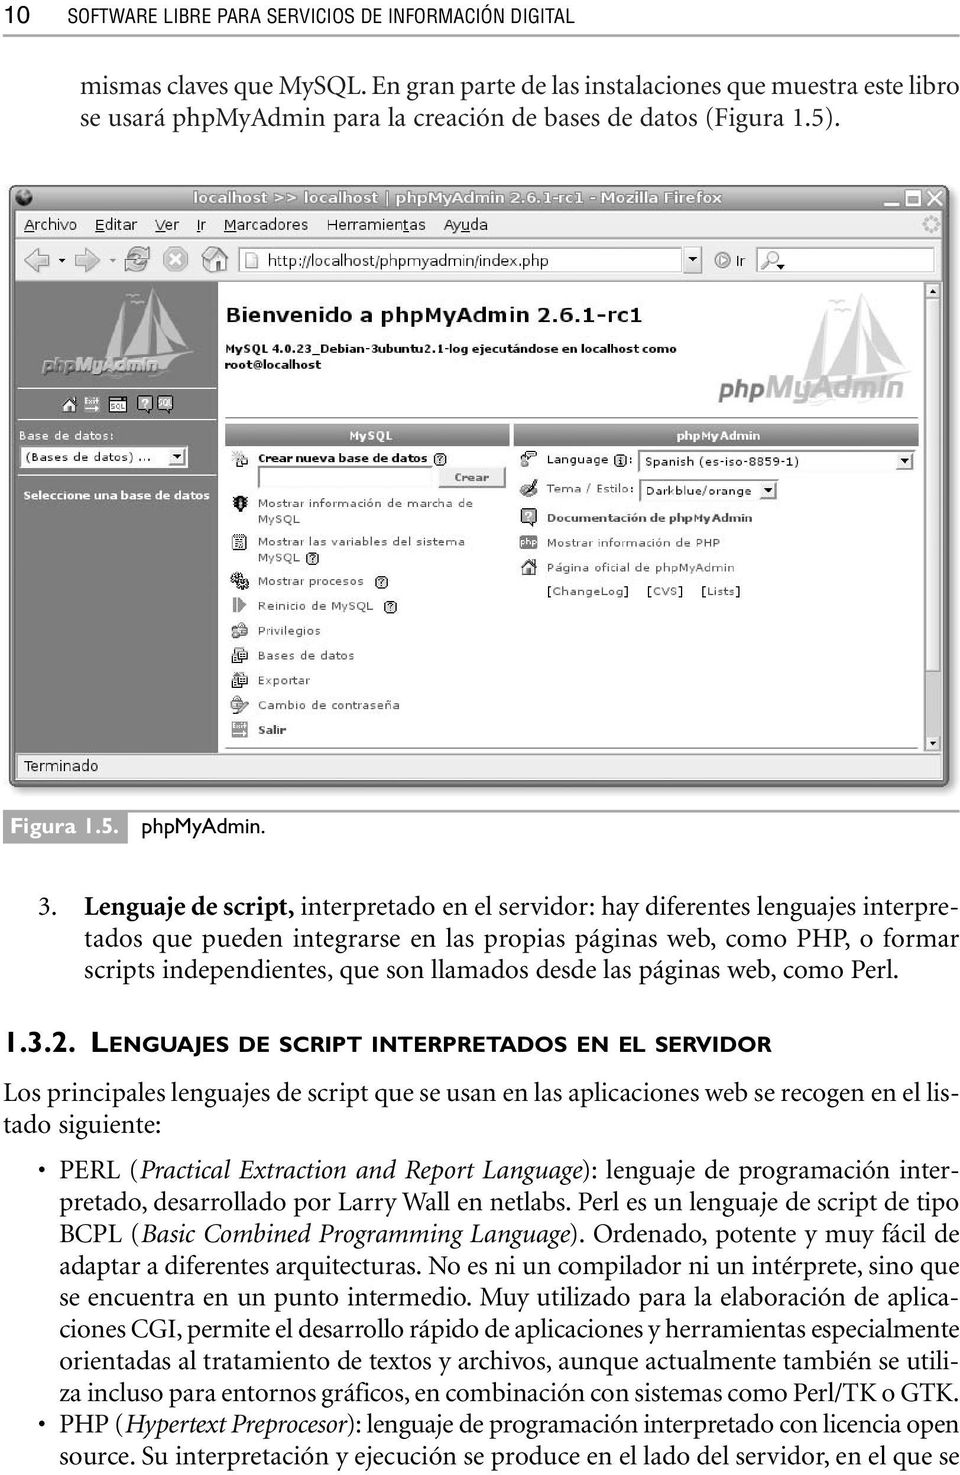 Lenguaje de script, interpretado en el servidor: hay diferentes lenguajes interpretados que pueden integrarse en las propias páginas web, como PHP, o formar scripts independientes, que son llamados